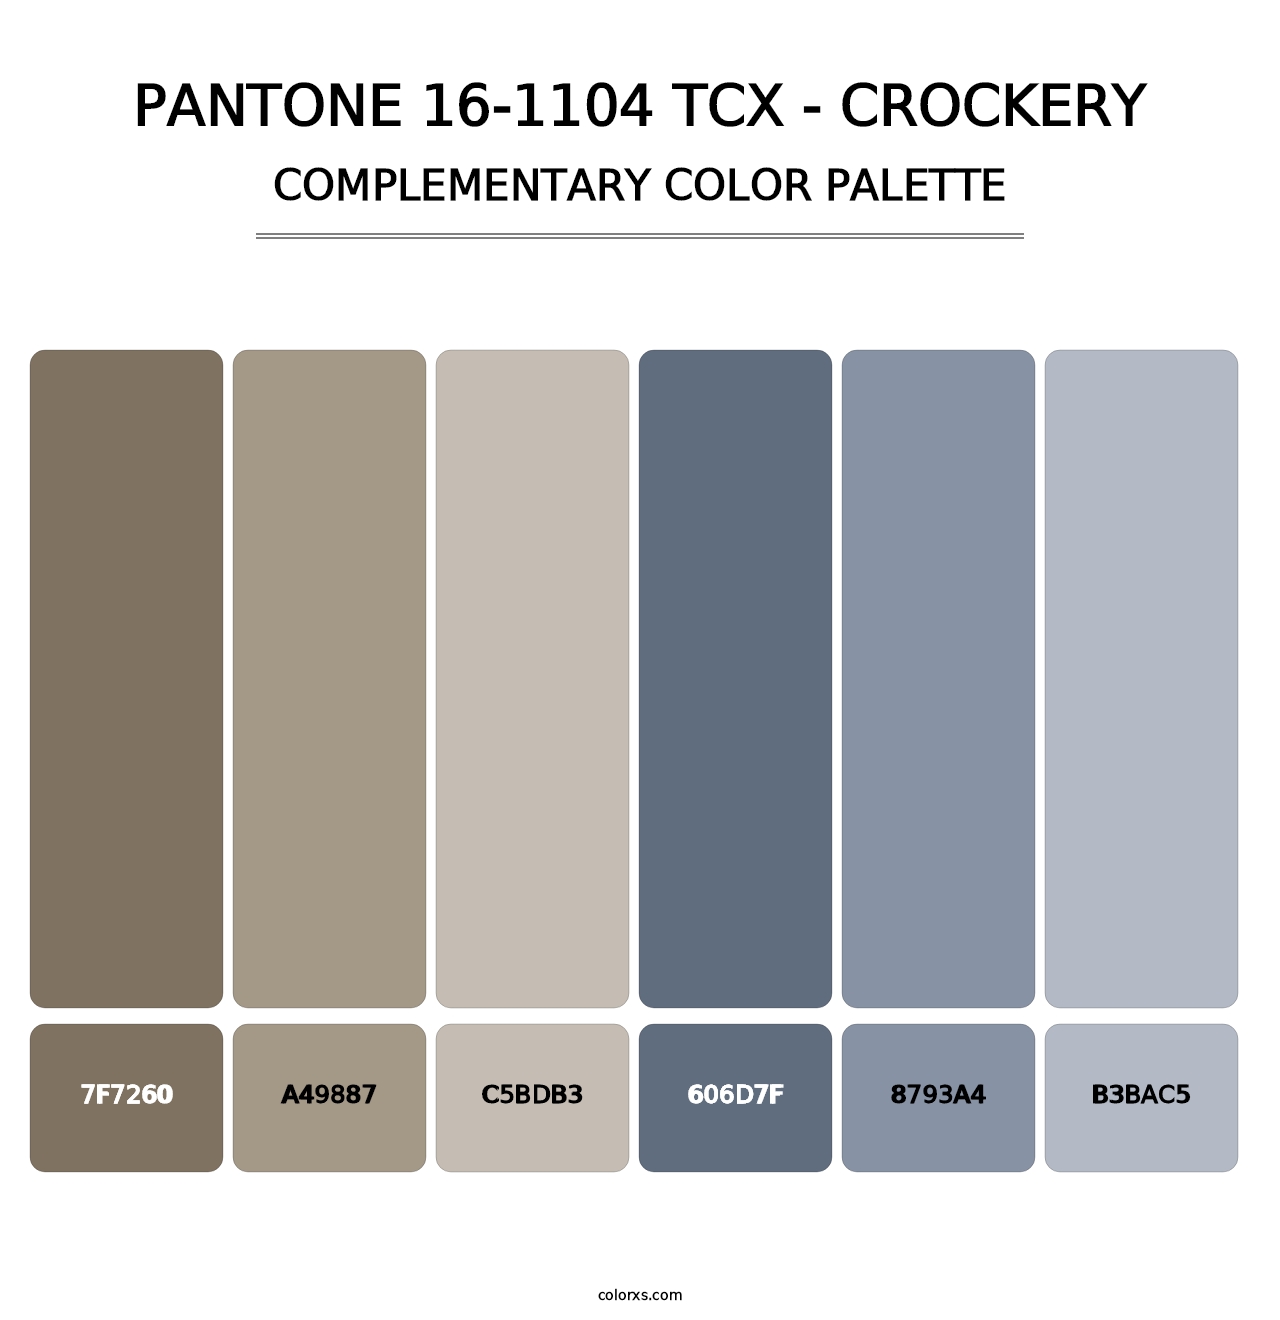 PANTONE 16-1104 TCX - Crockery - Complementary Color Palette